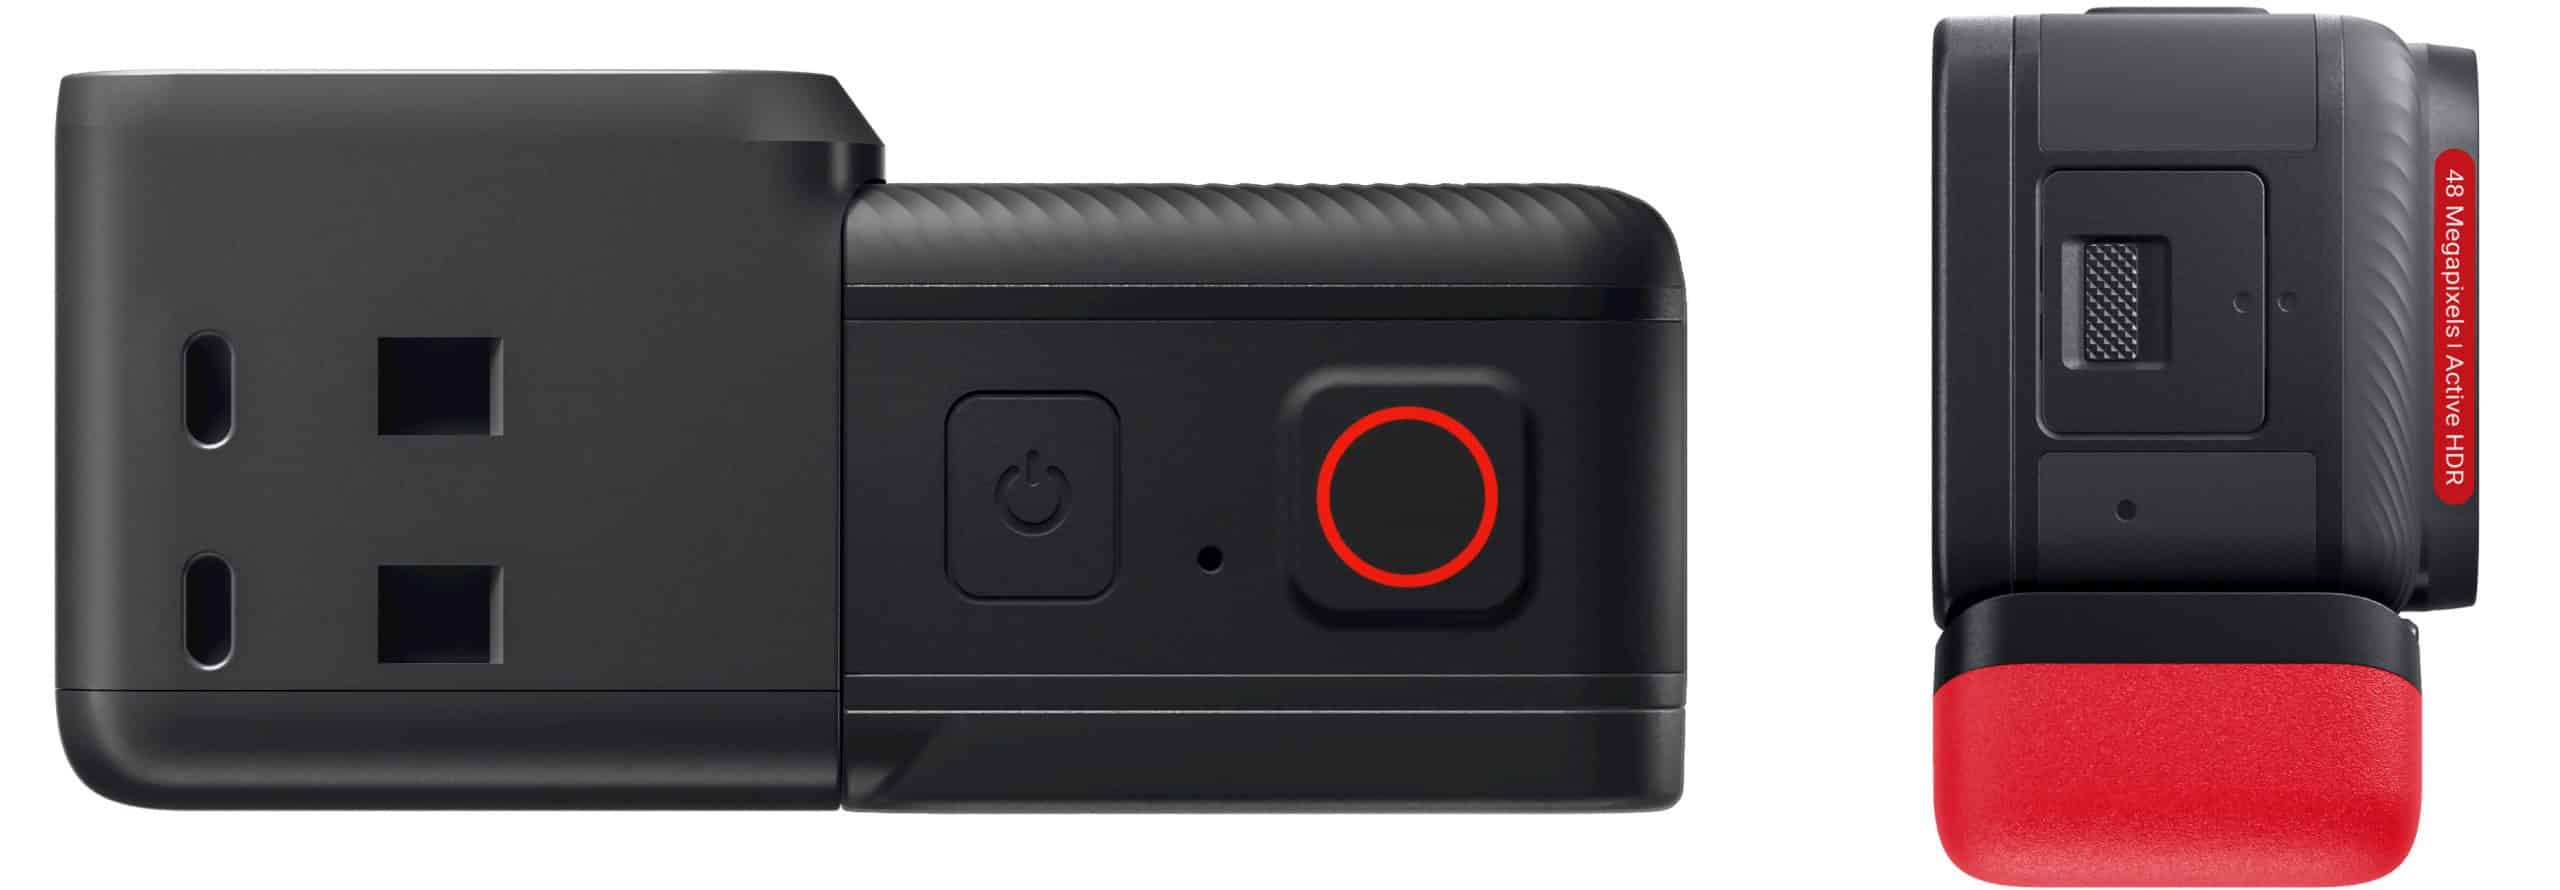 Insta360 ra mắt camera hành trình ONE RS với thiết kế module, chuyển đổi góc quay nhanh chóng và tiện lợi